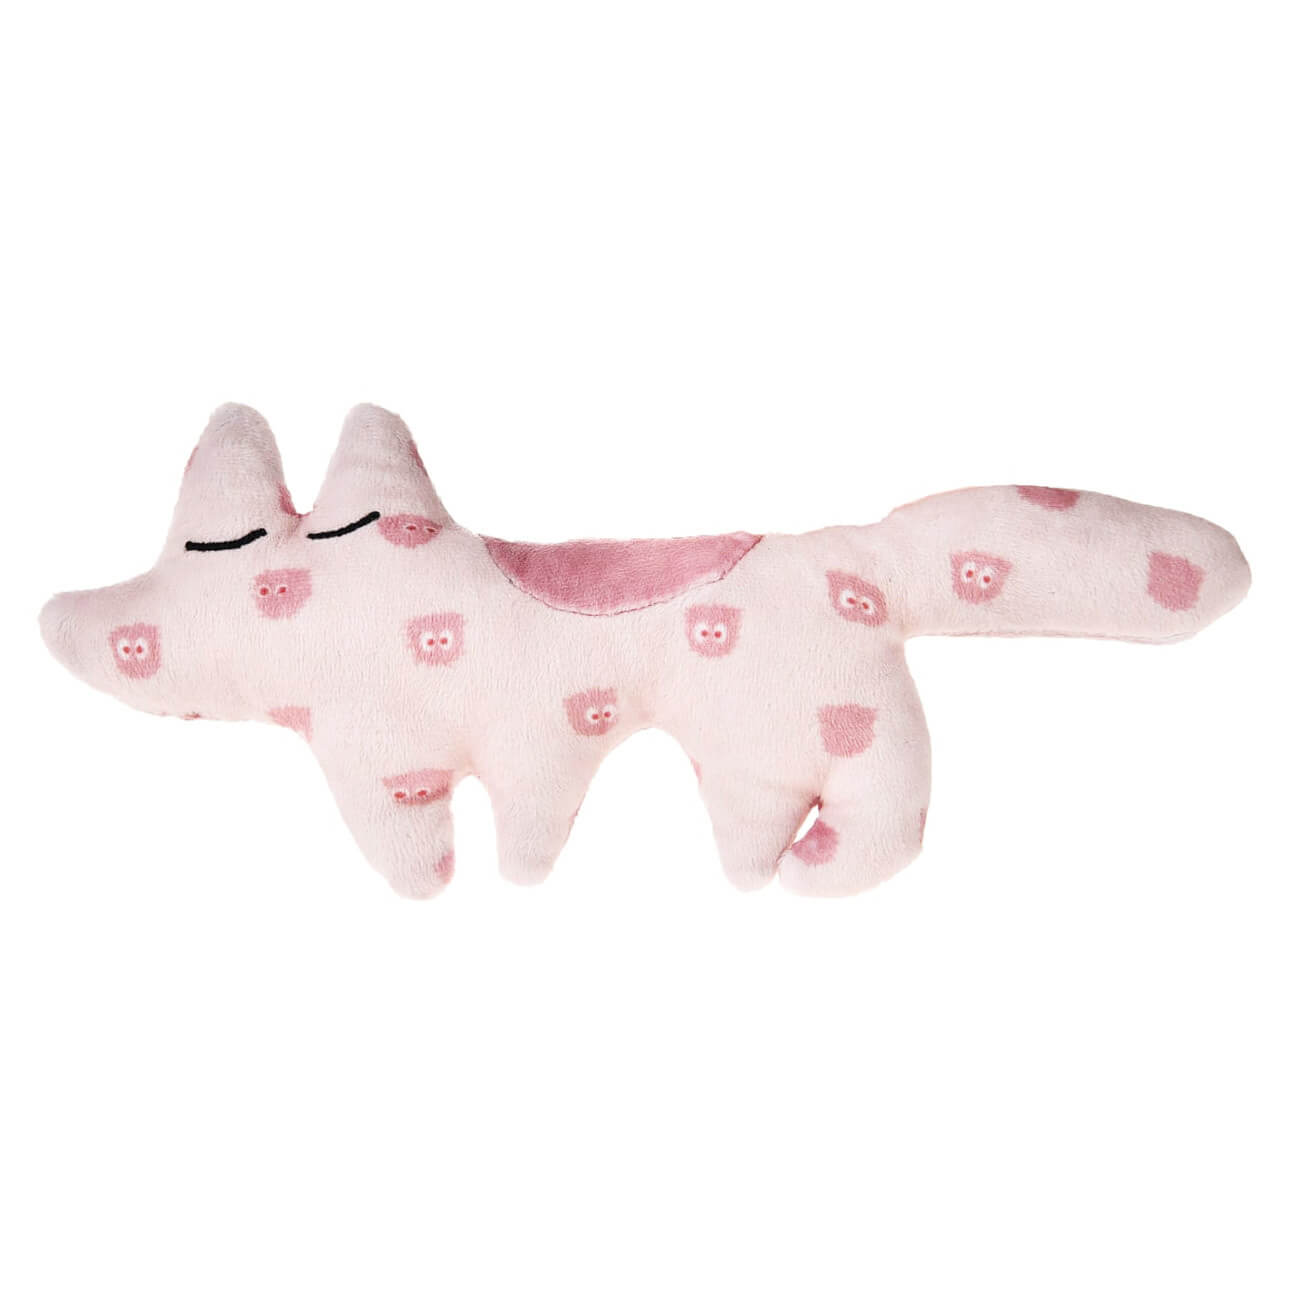 Игрушка для щенков, 23х10 см, полиэстер, розовая, Лиса, Small pet flamingo игрушка для щенков косточки плюшевые со звуком 10см